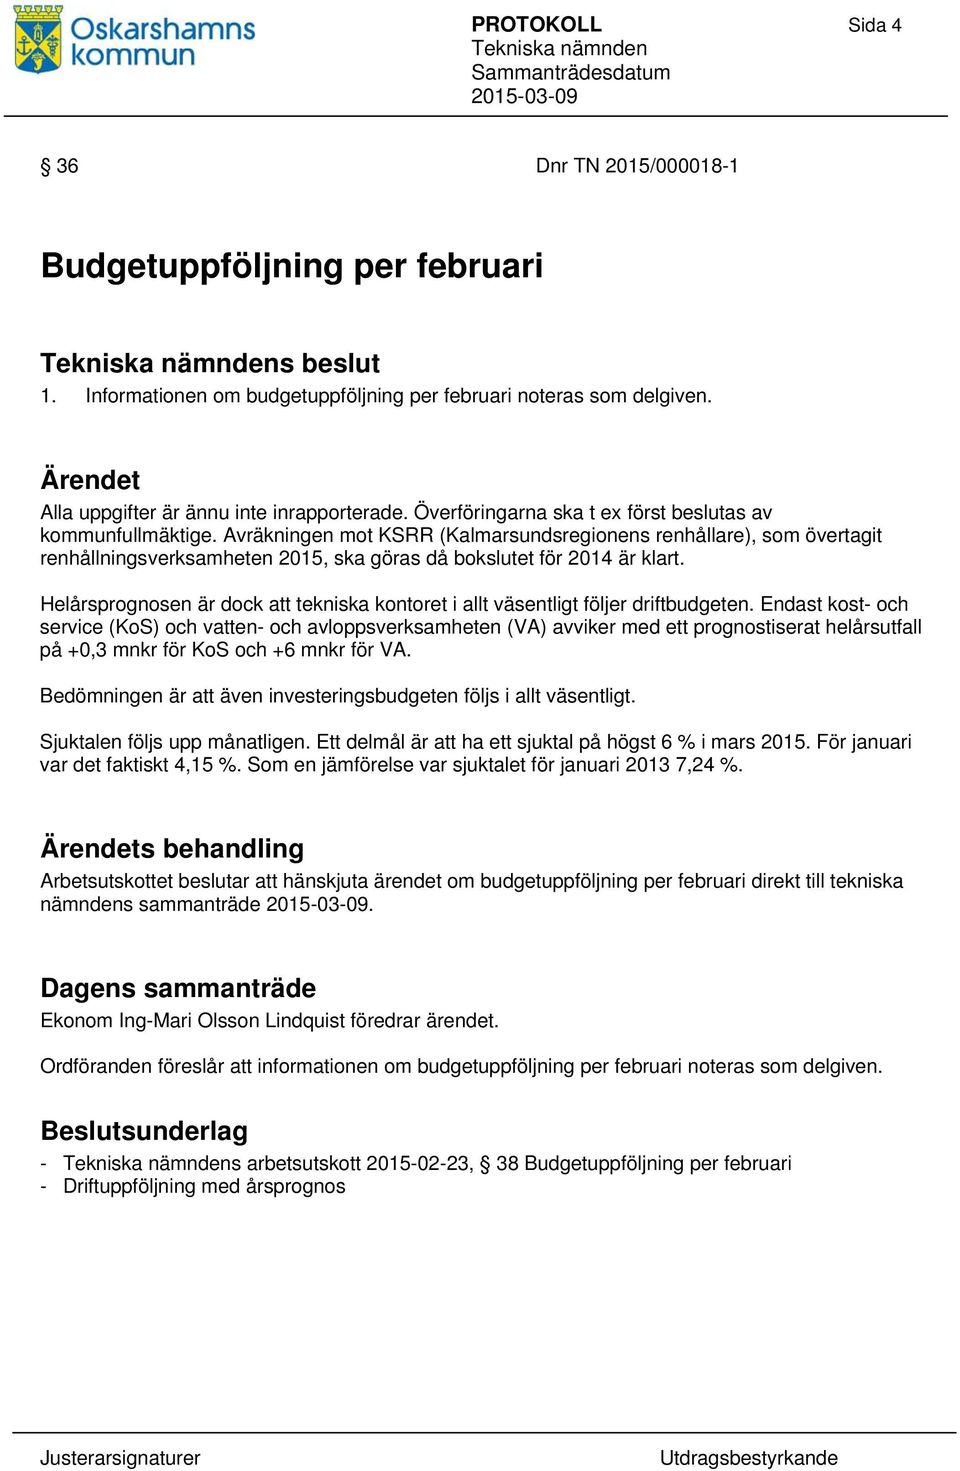 Avräkningen mot KSRR (Kalmarsundsregionens renhållare), som övertagit renhållningsverksamheten 2015, ska göras då bokslutet för 2014 är klart.